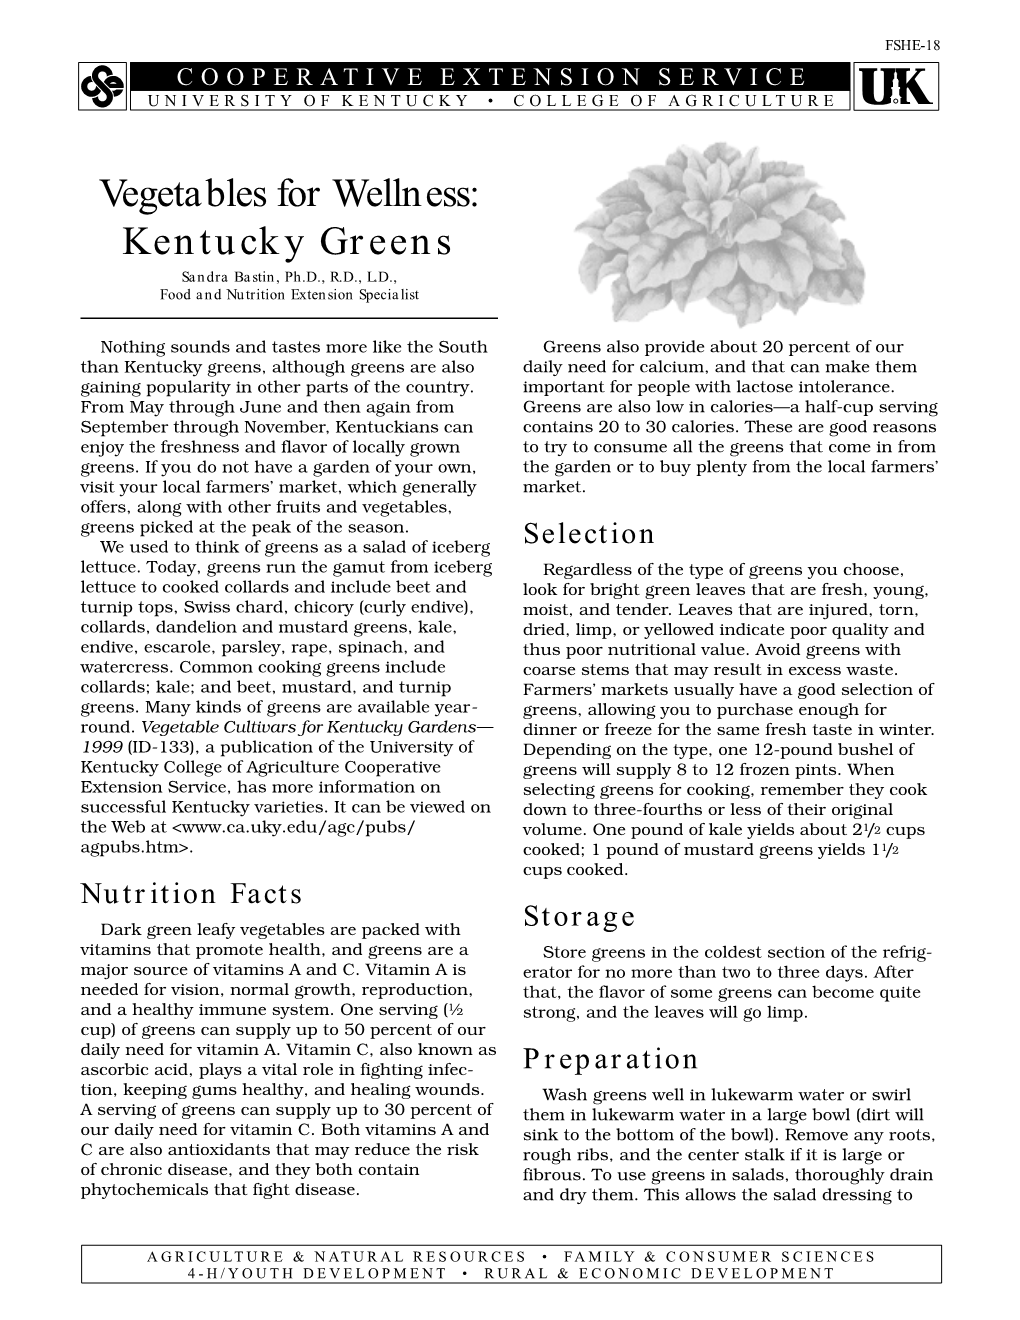 FSHE-18: Vegetables for Wellness: Kentucky Greens